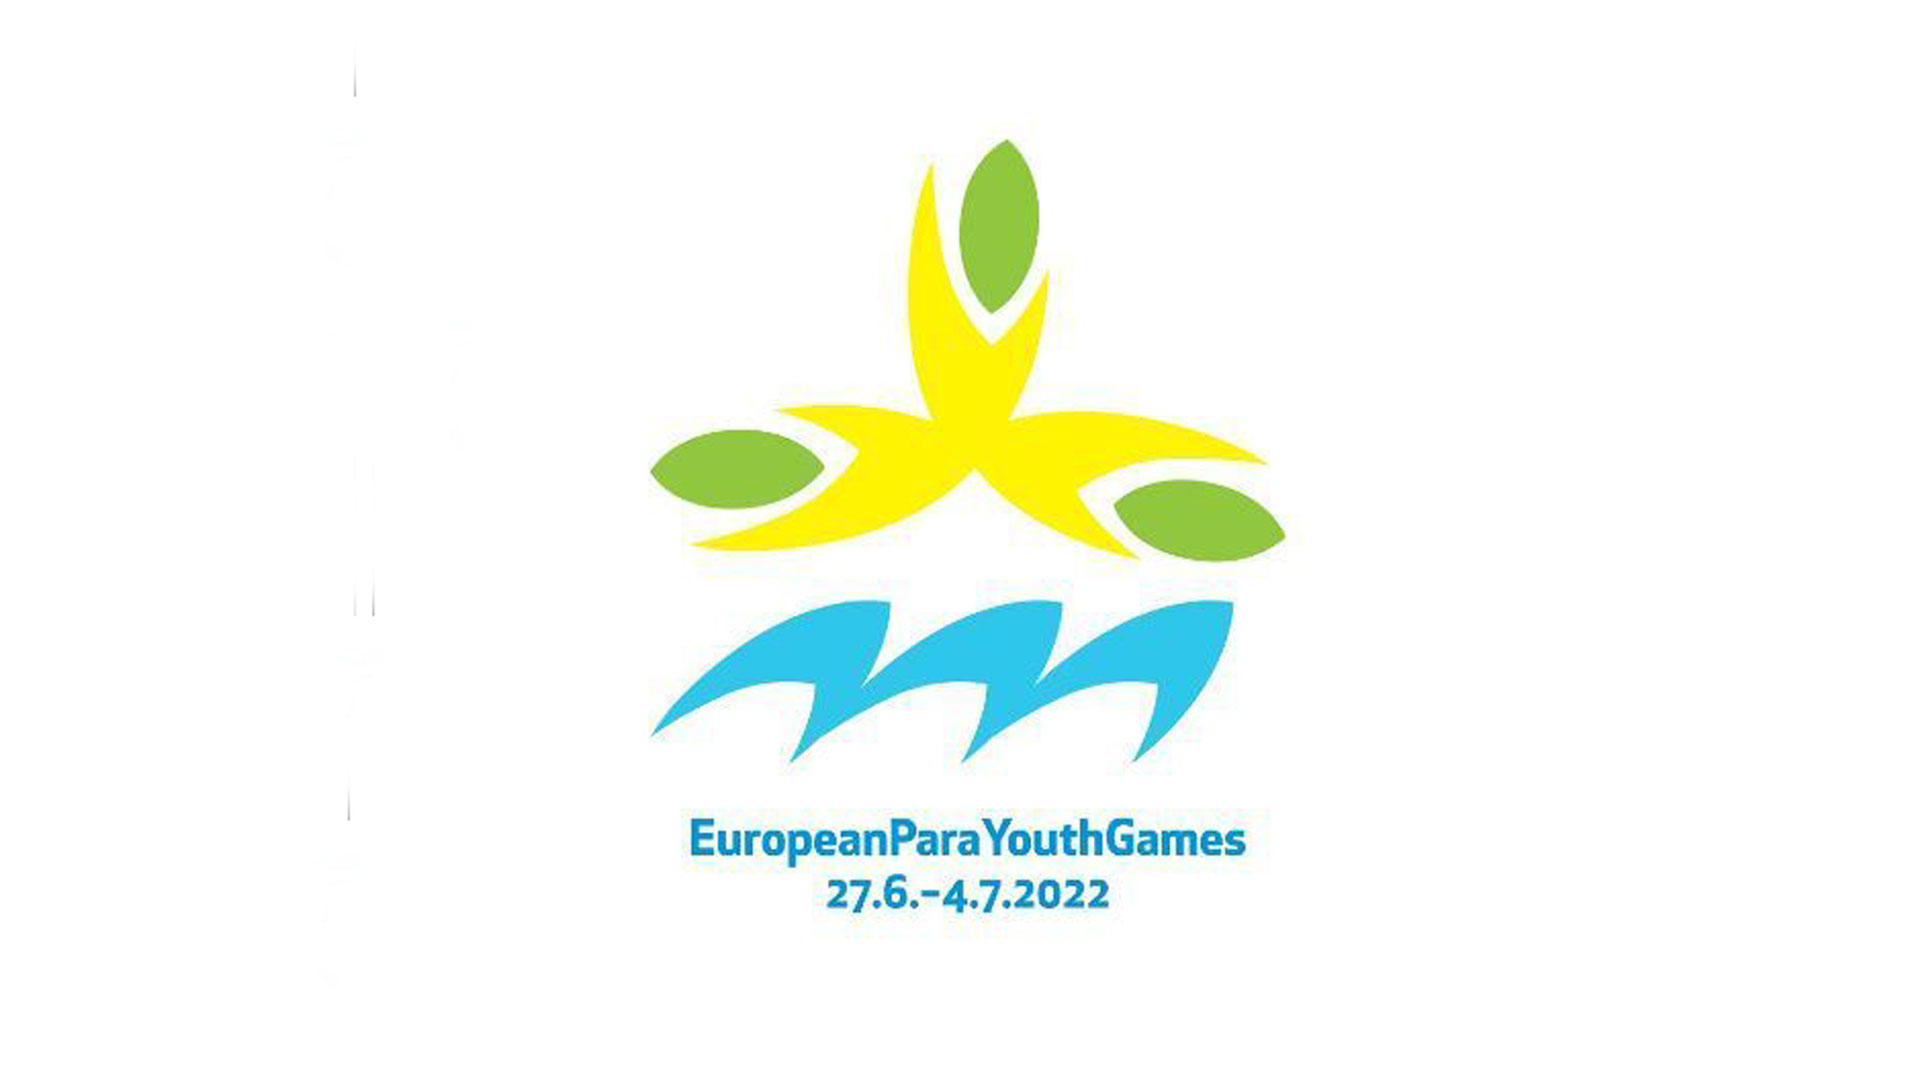 Quatro portugueses nos Jogos Europeus da Juventude